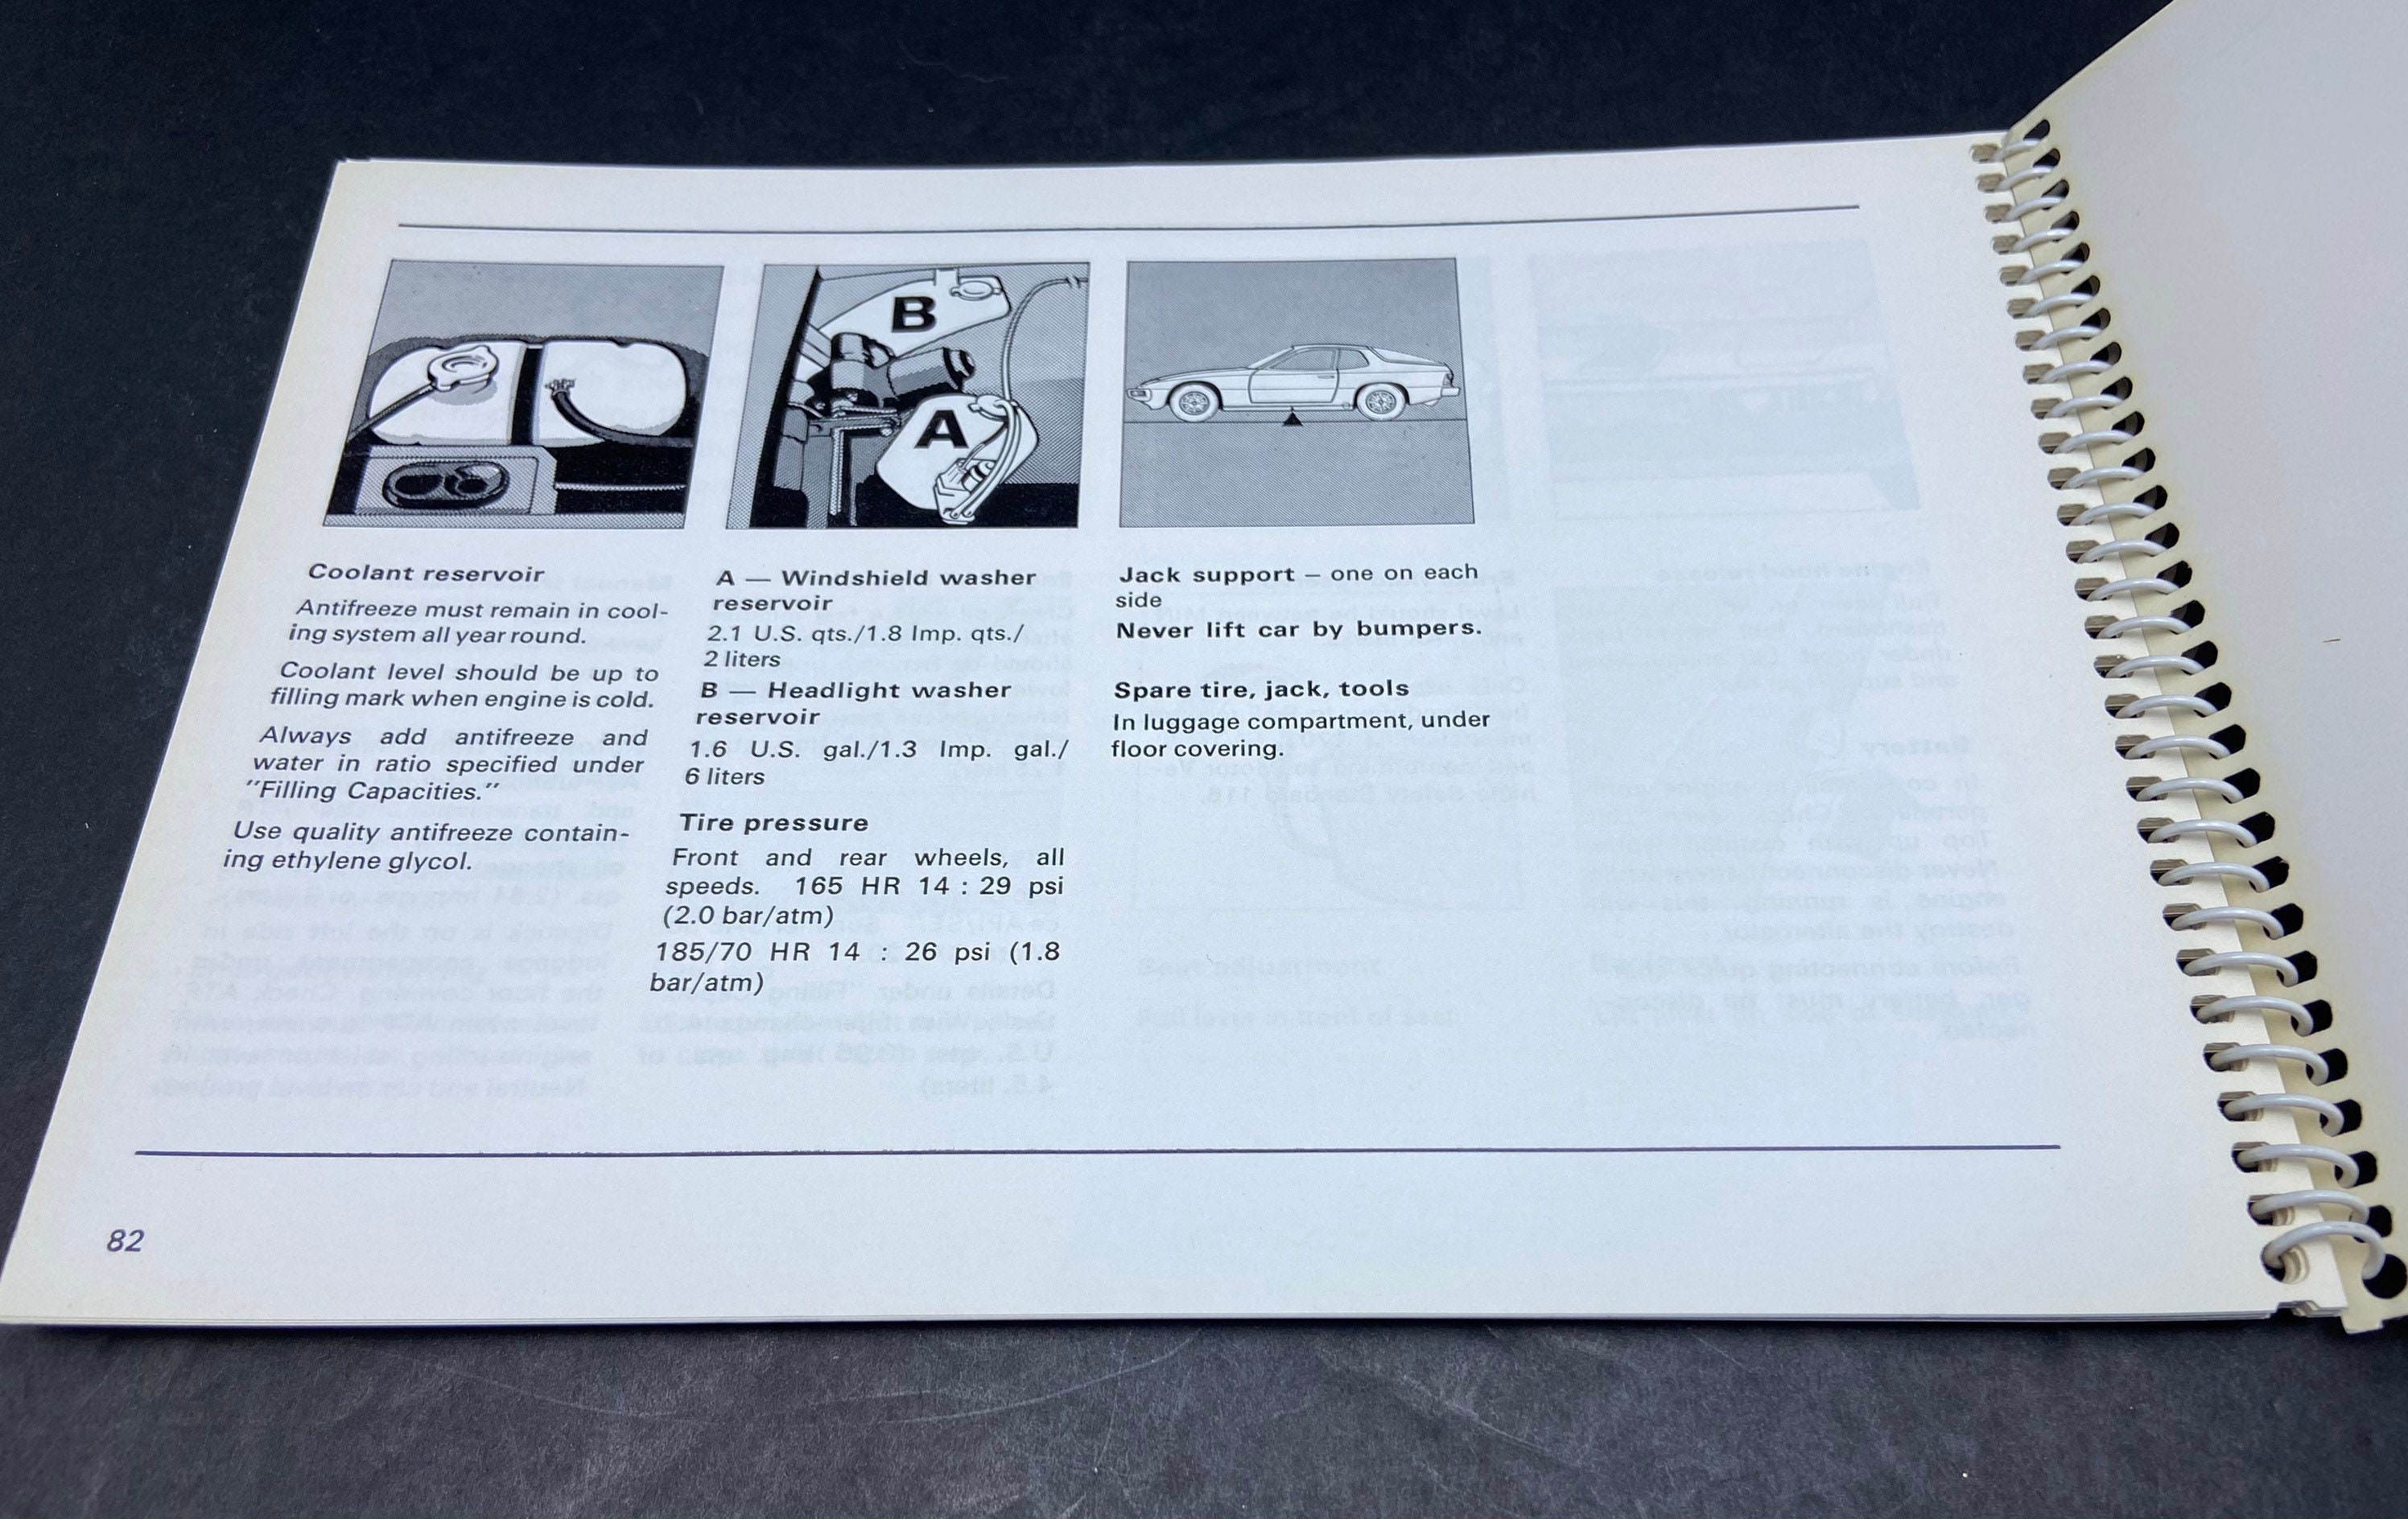 Porsche Owners Manual / 1977 Porsche Manual / Porsche 924 | Etsy